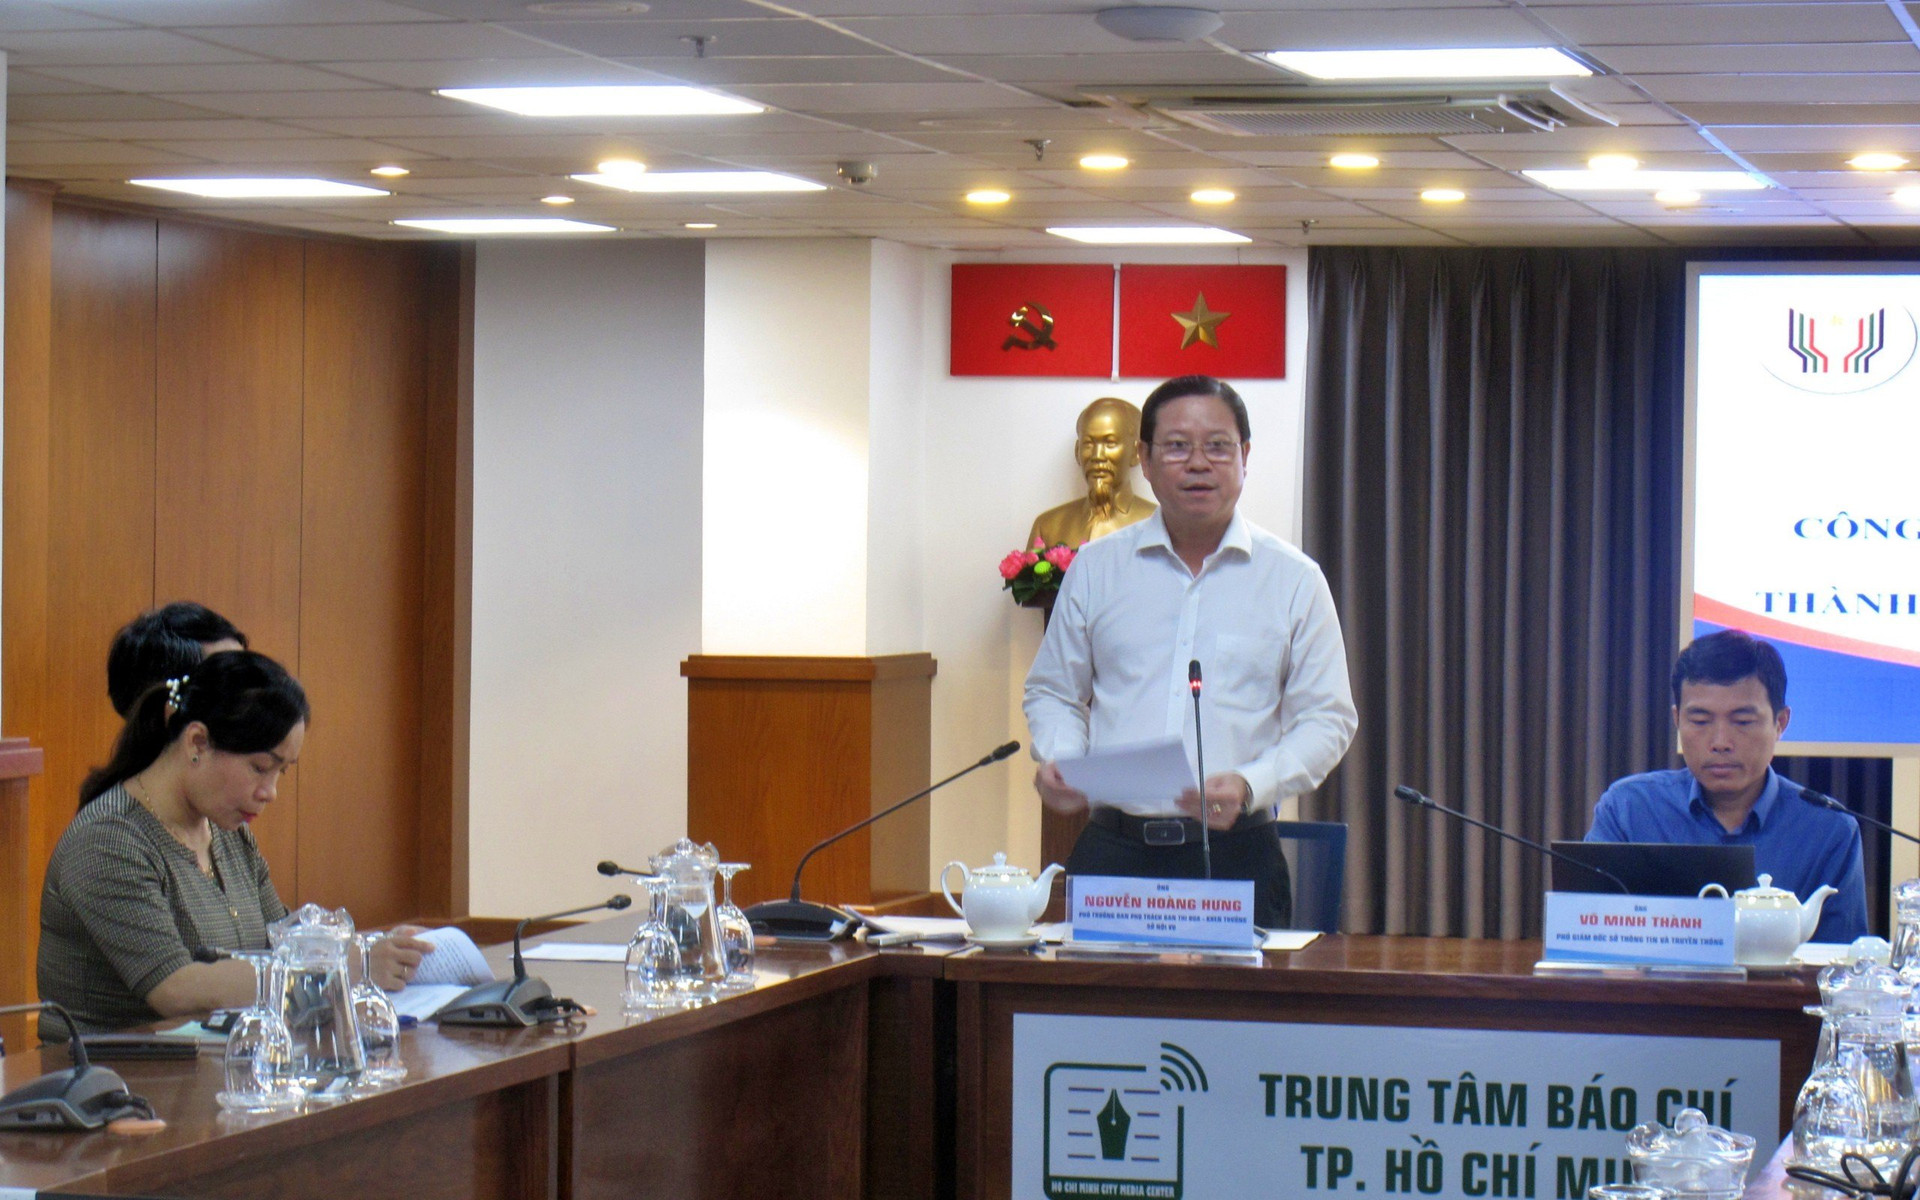 Ông Nguyễn Hoàng Hưng - Phó Trưởng ban thường trực Ban Thi đua - Khen thưởng TP HCM (Sở Nội vụ) thông tin tại họp báo.